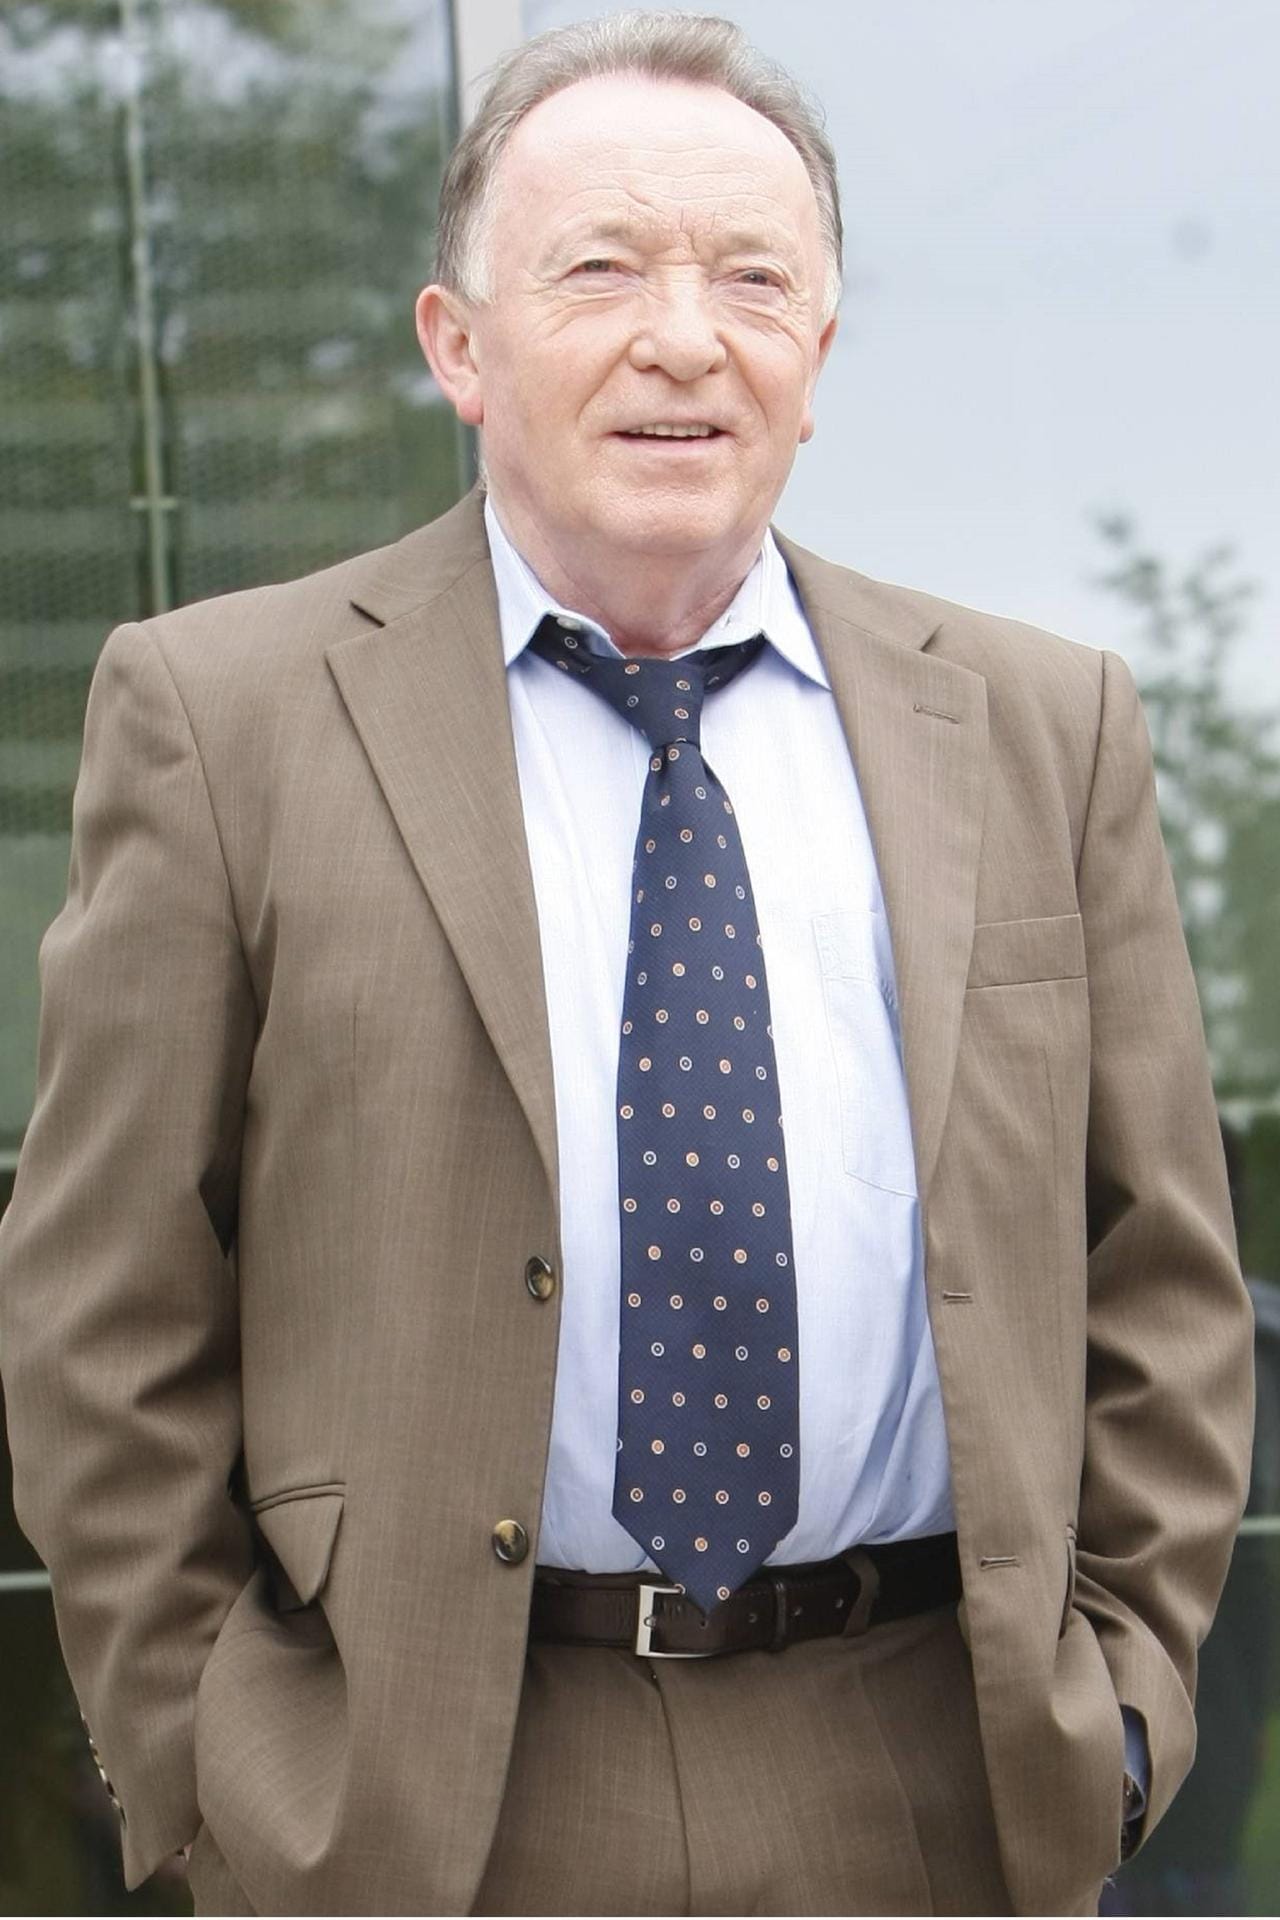 Peter Sodann mischt seit 2005 in der Politik mit. Der "Tatort"-Star trat 2008 als für Die Linke als Kandidat für das Amt des Bundespräsidenten an.